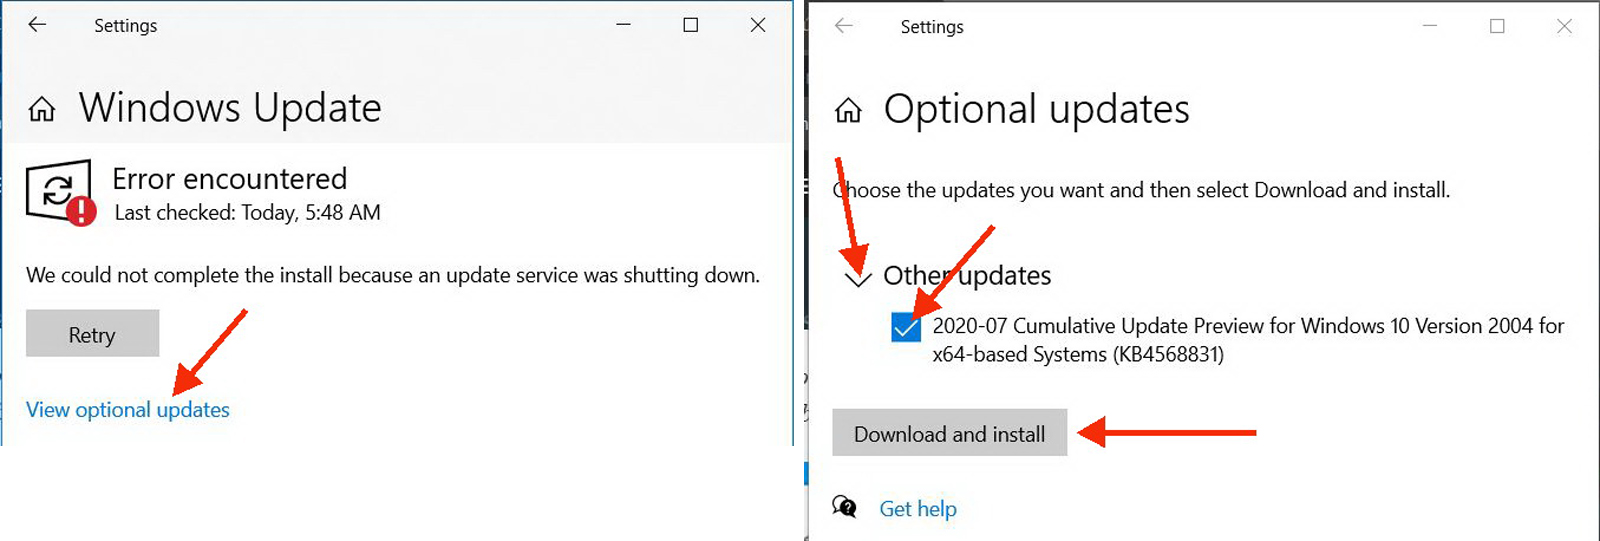 Áp dụng giao diện Start Menu mới cho Windows 10 - 3